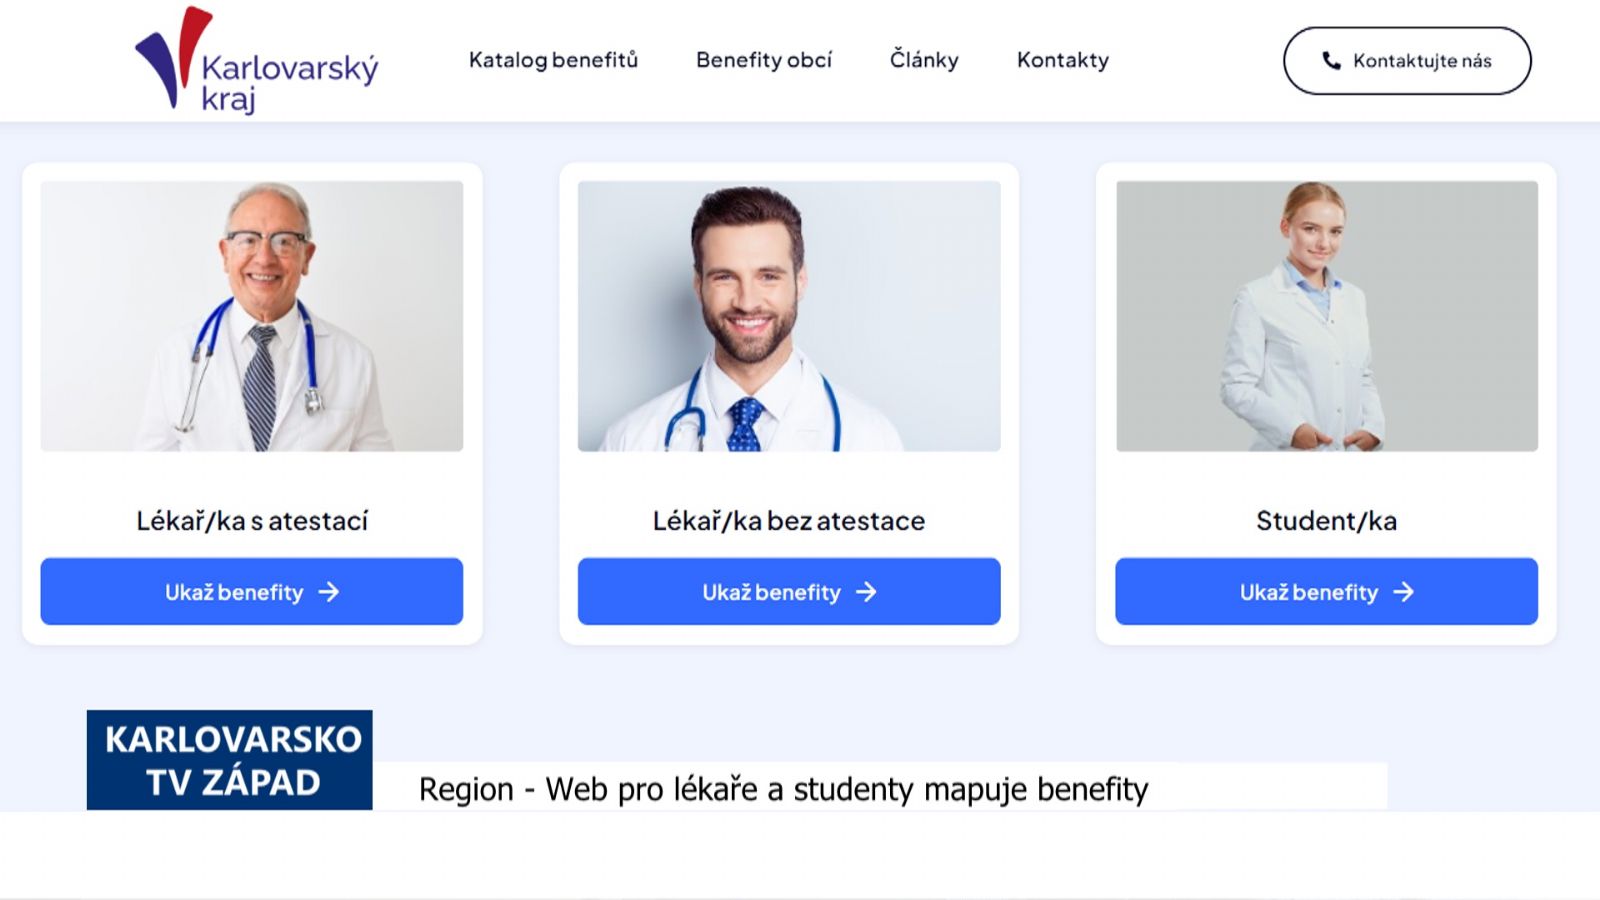 Region: Web pro lékaře a studenty mapuje benefity (TV Západ)